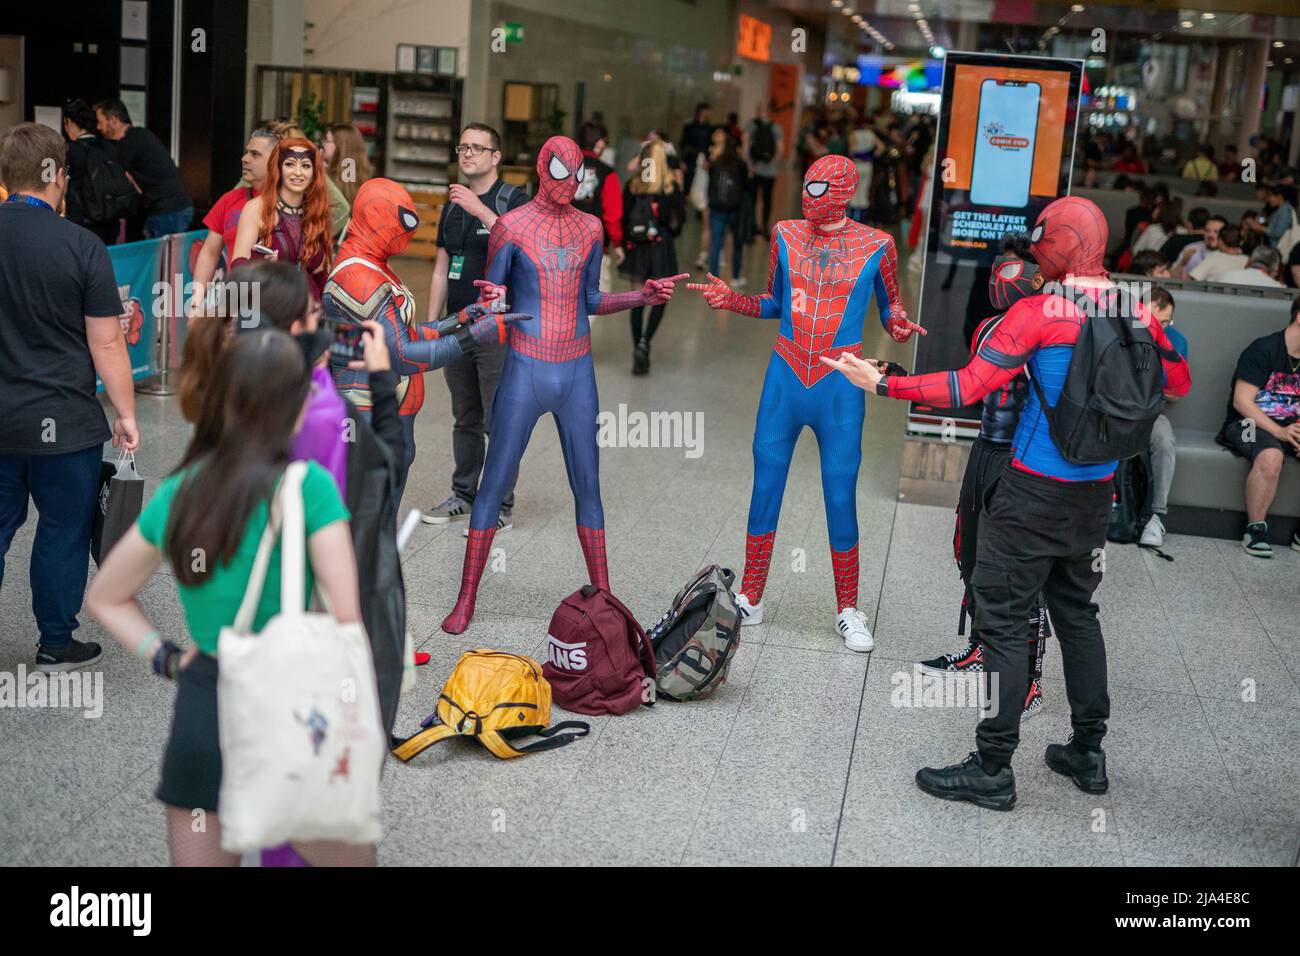 Cosplayer, die am ersten Tag der MCM Comic Con im Excel London im Osten Londons als Spiderman verkleidet waren. Bilddatum: Freitag, 27. Mai 2022. Stockfoto